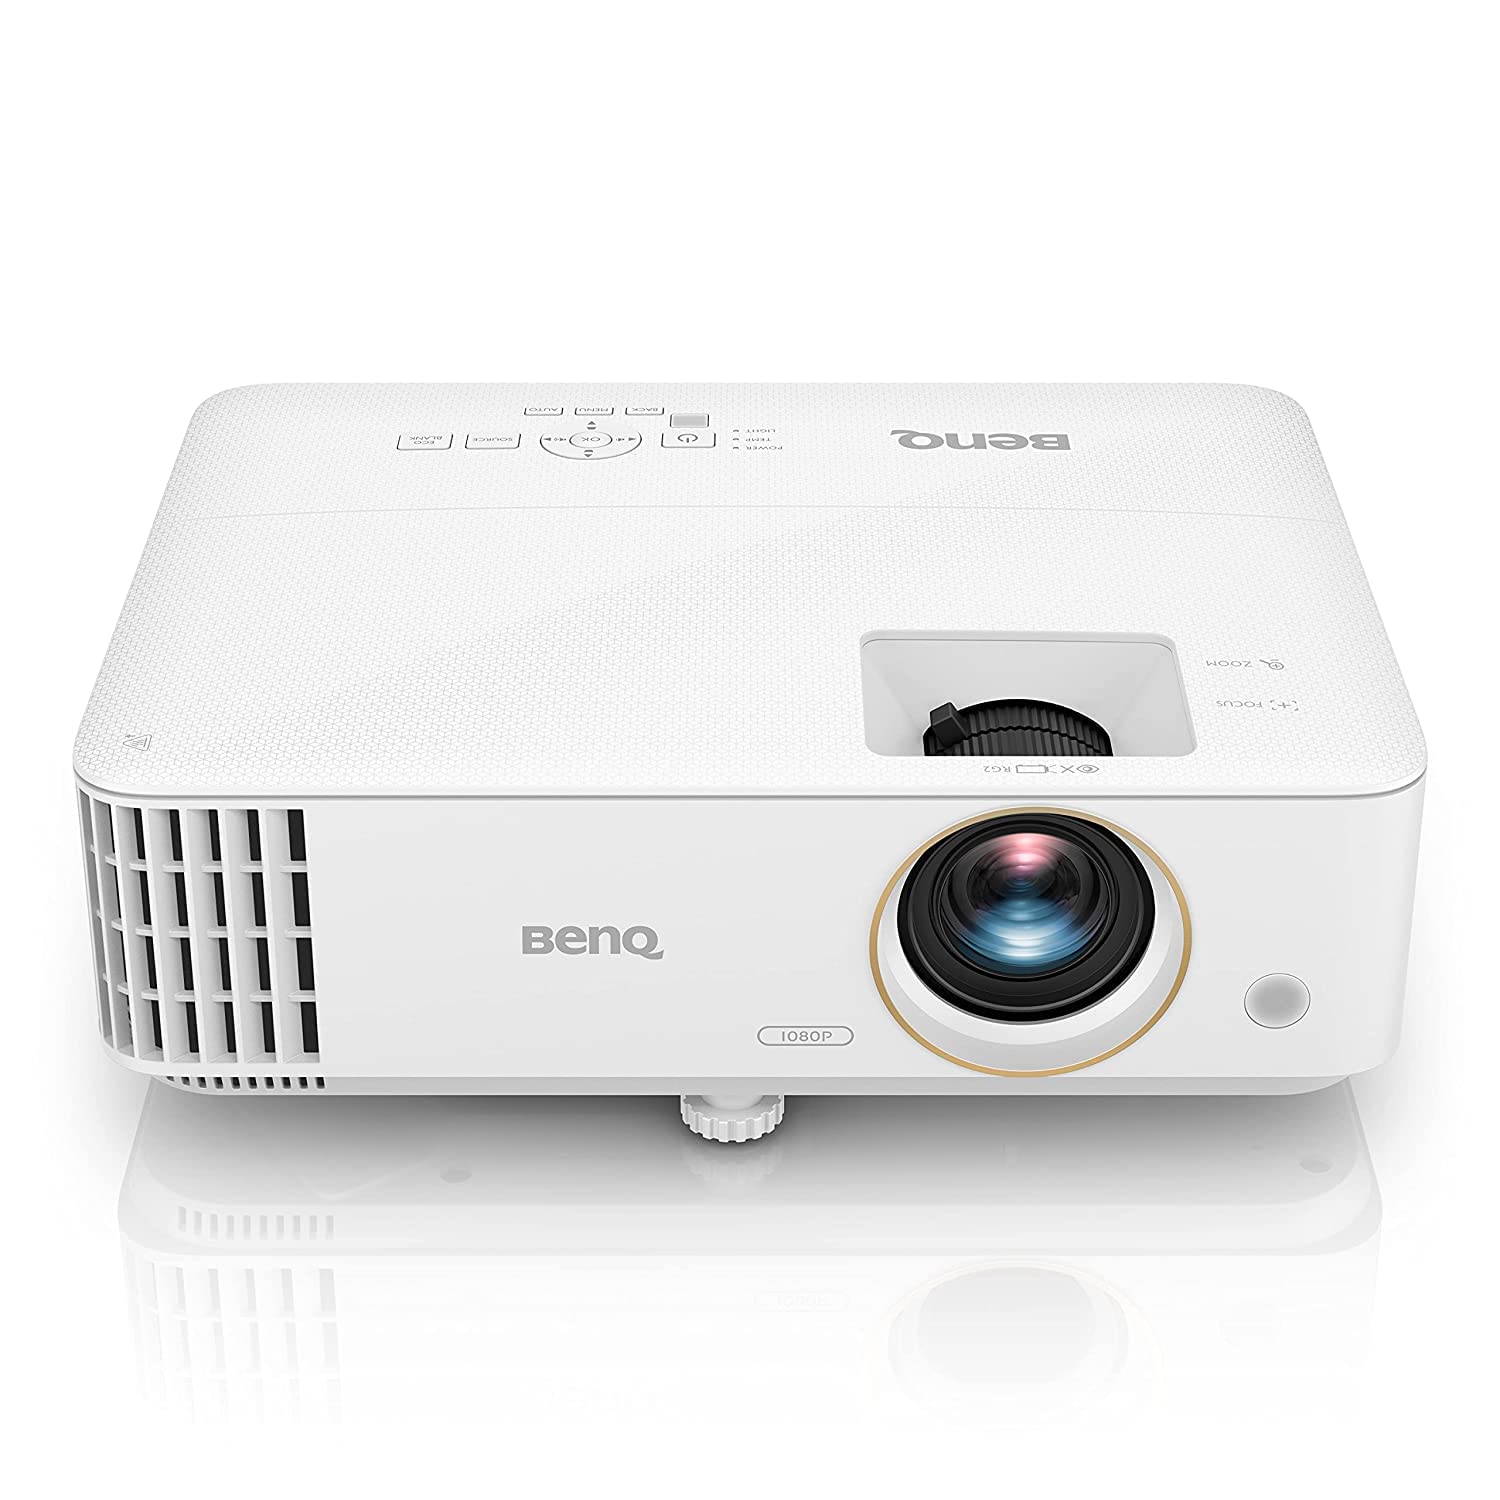  BenQ TH585 Full HD DLP Projector